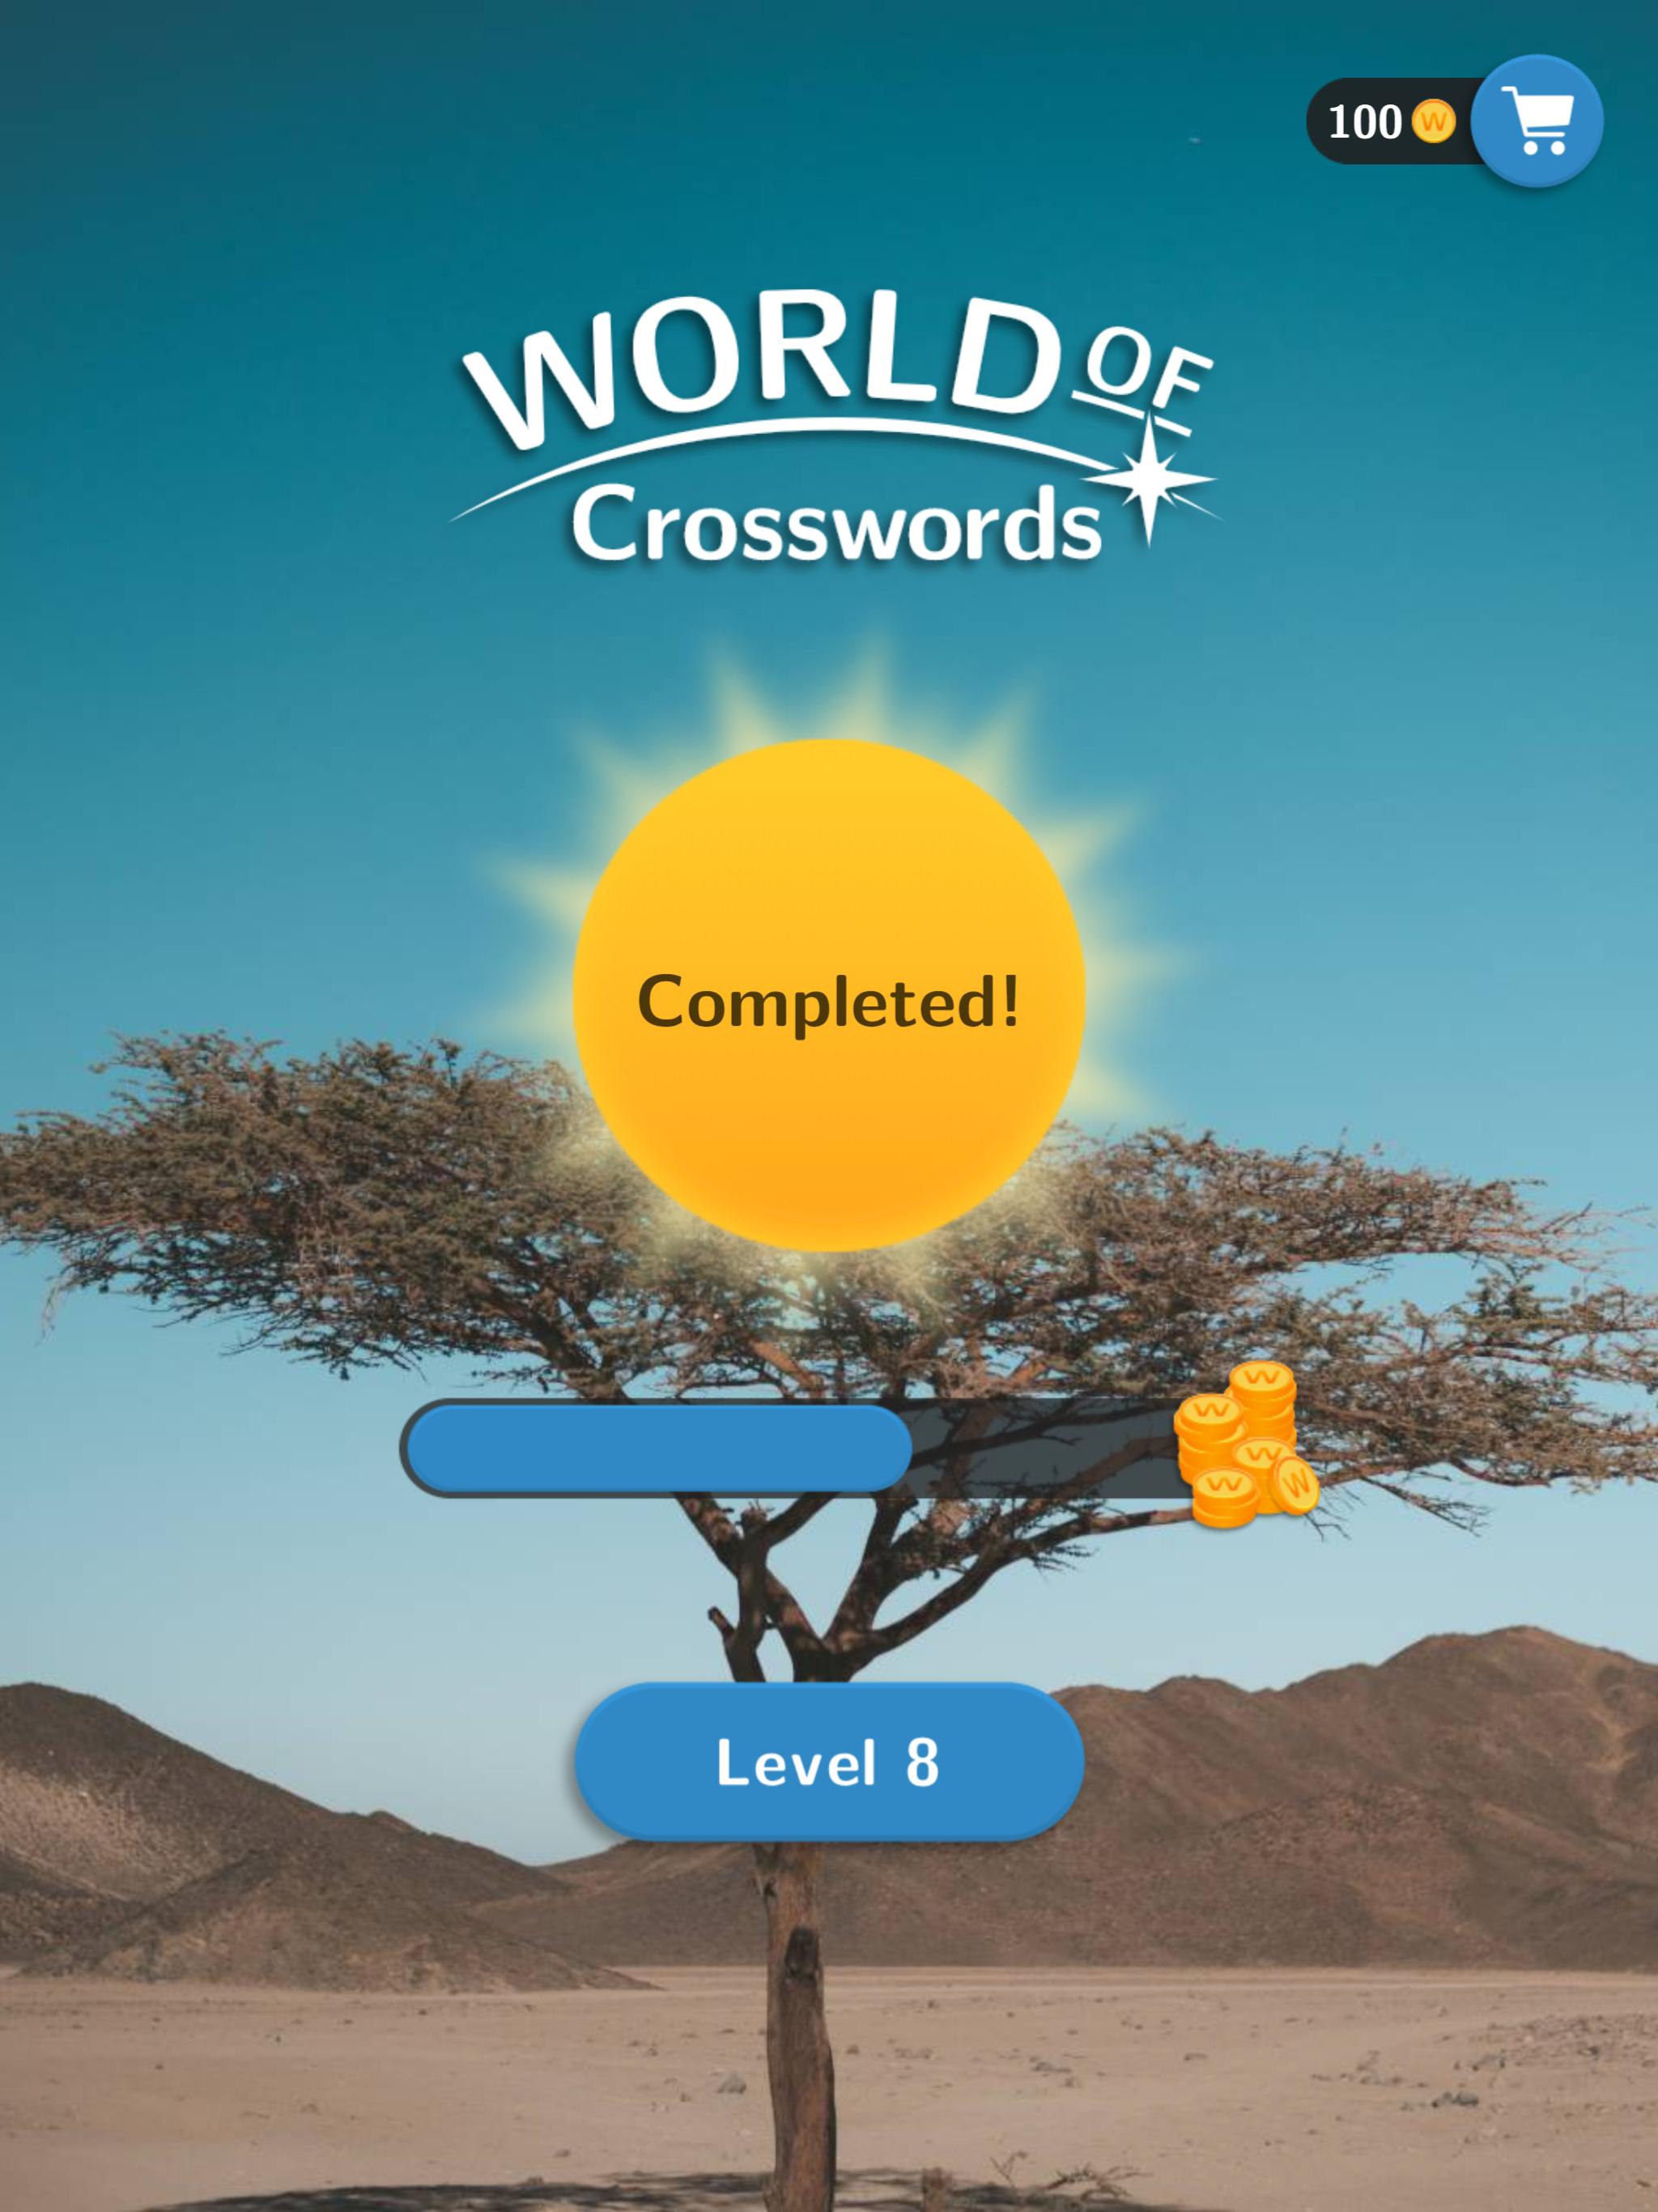 World of Crosswords 1.4.6 Screenshot 11